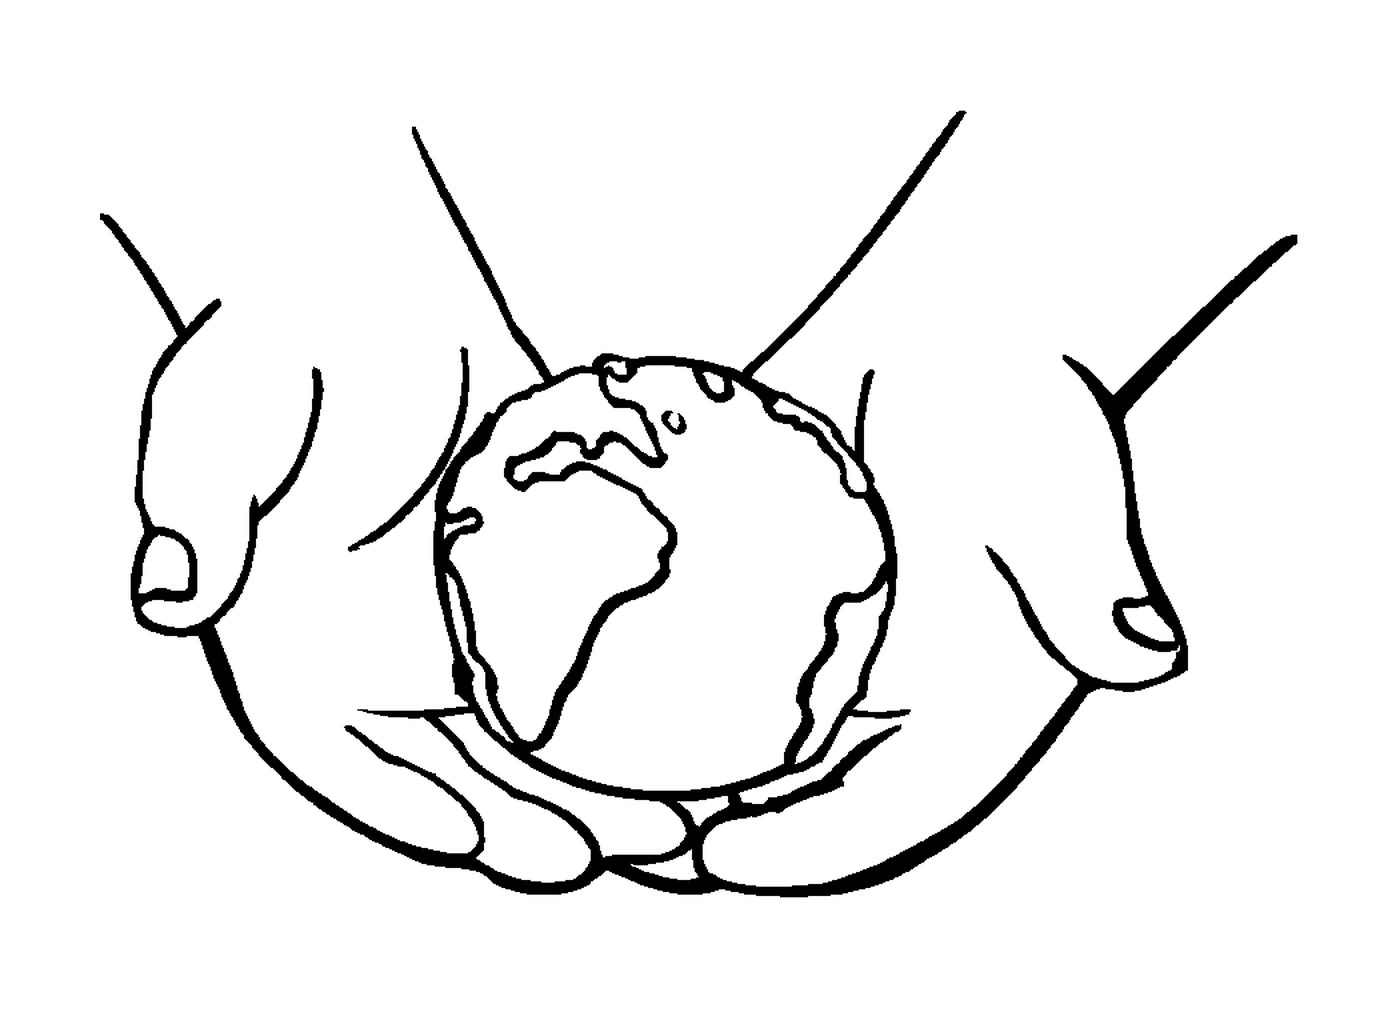  Sostenga la Tierra en sus manos, símbolo de unión 